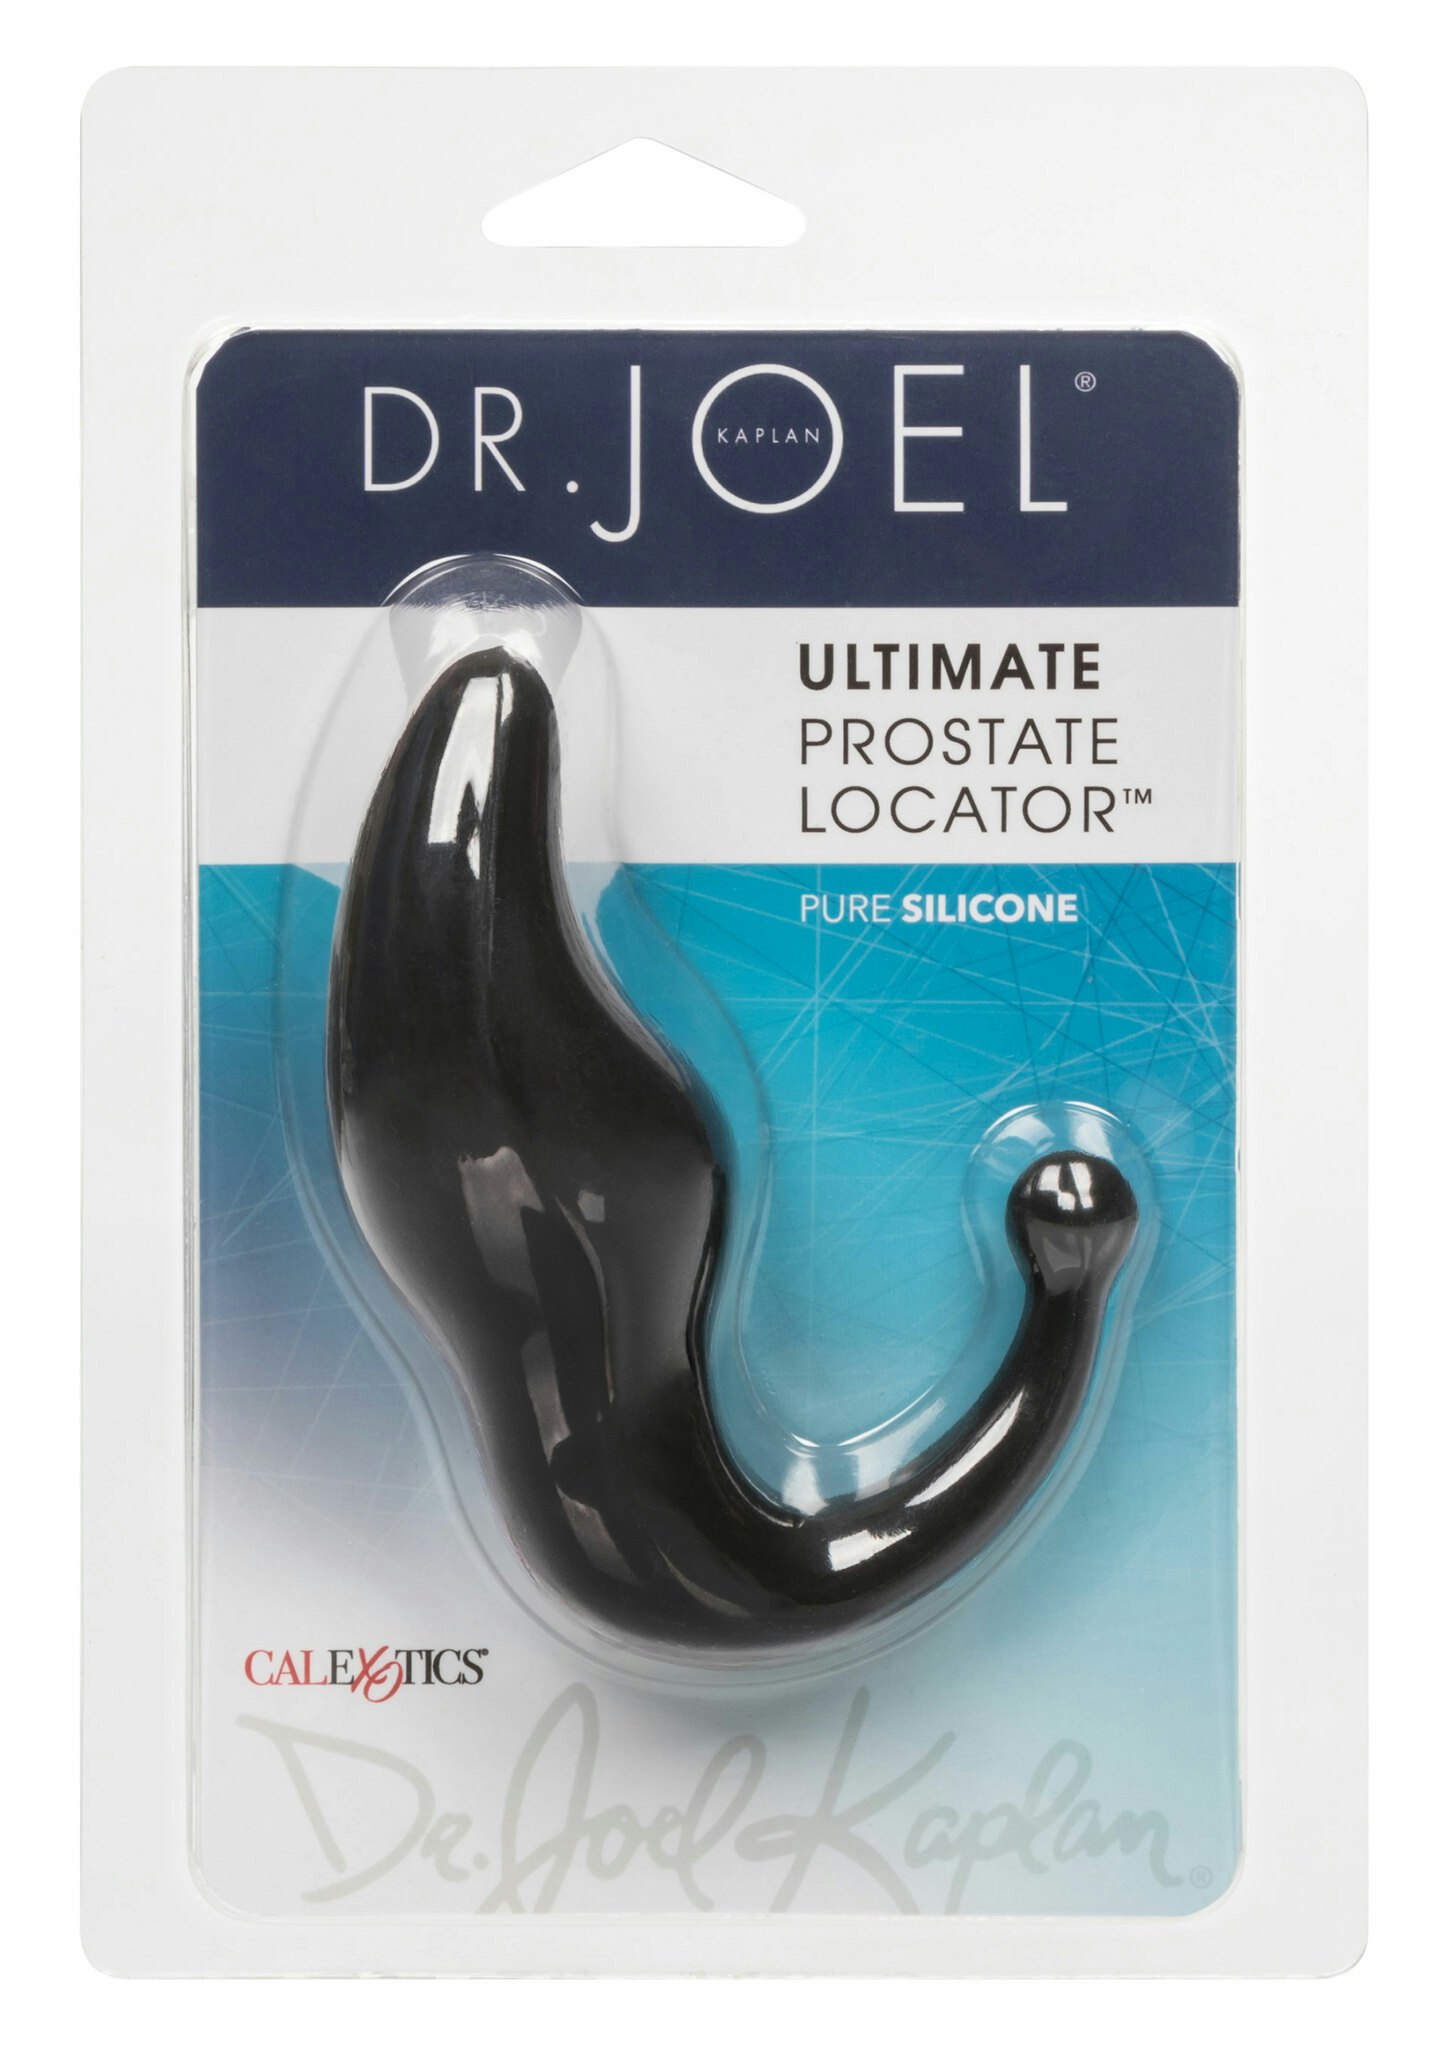 Dr Joel Kaplan - Ultimate Prostate Locator